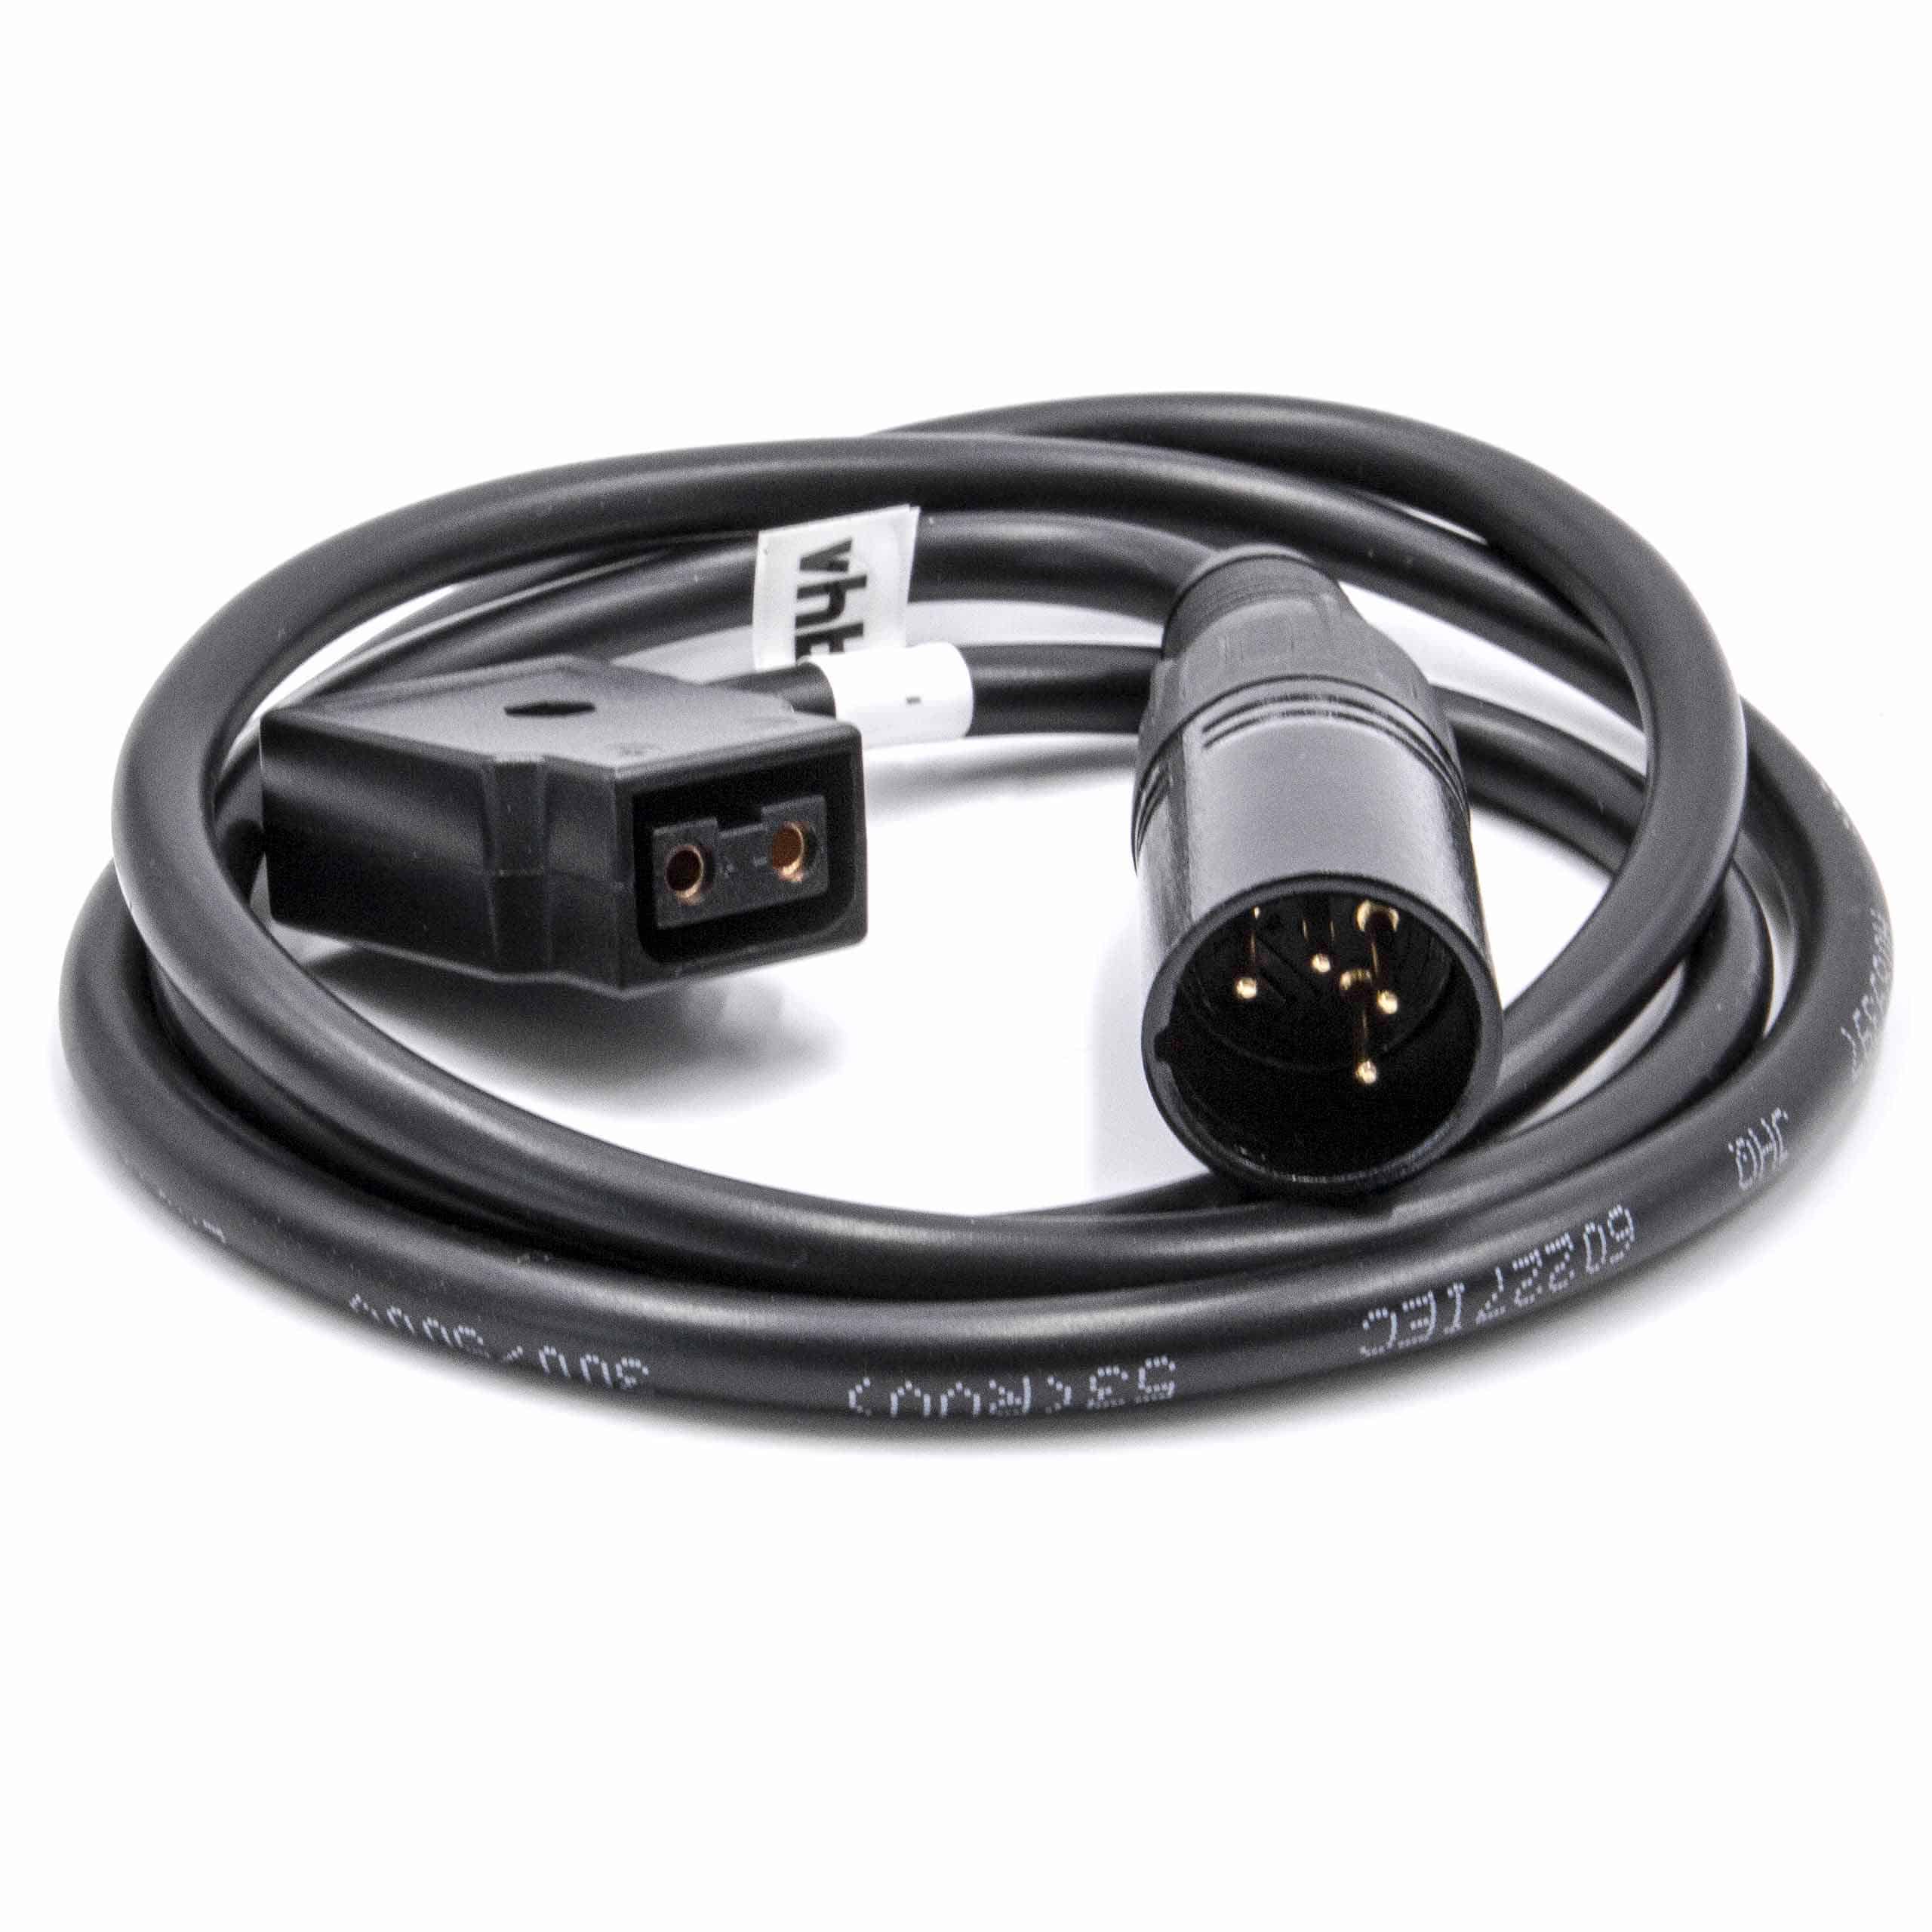 Kabel adapter D-Tap (ż) - XLR 4-pin do aparatu 602, 1303, LVM-170A, PMW-F55 Practilite - 1 m